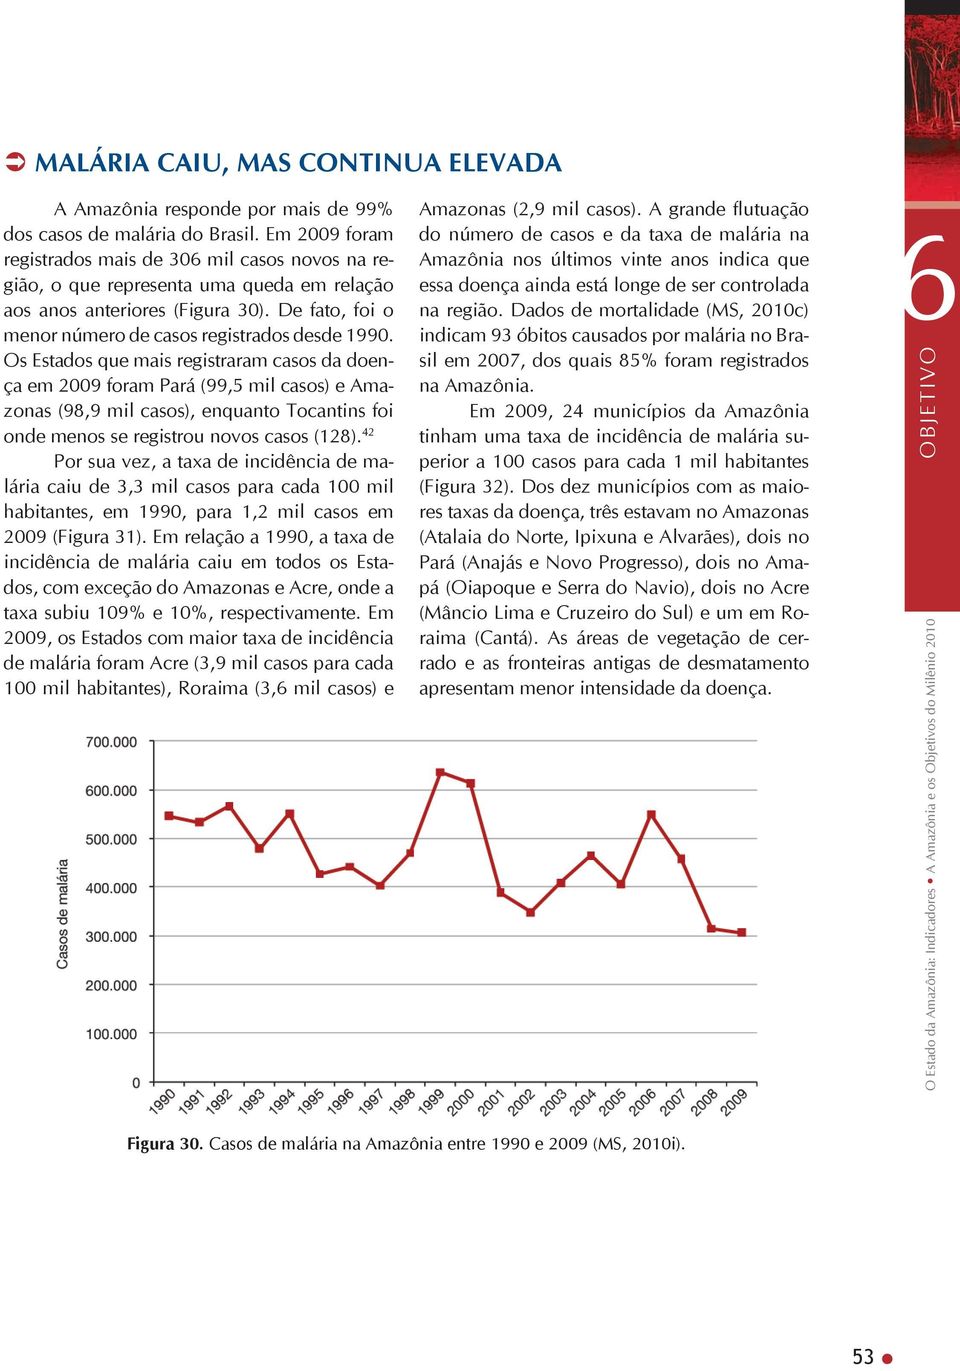 Os Estados que mais registraram casos da doença em 2009 foram Pará (99,5 mil casos) e Amazonas (98,9 mil casos), enquanto Tocantins foi onde menos se registrou novos casos (128).